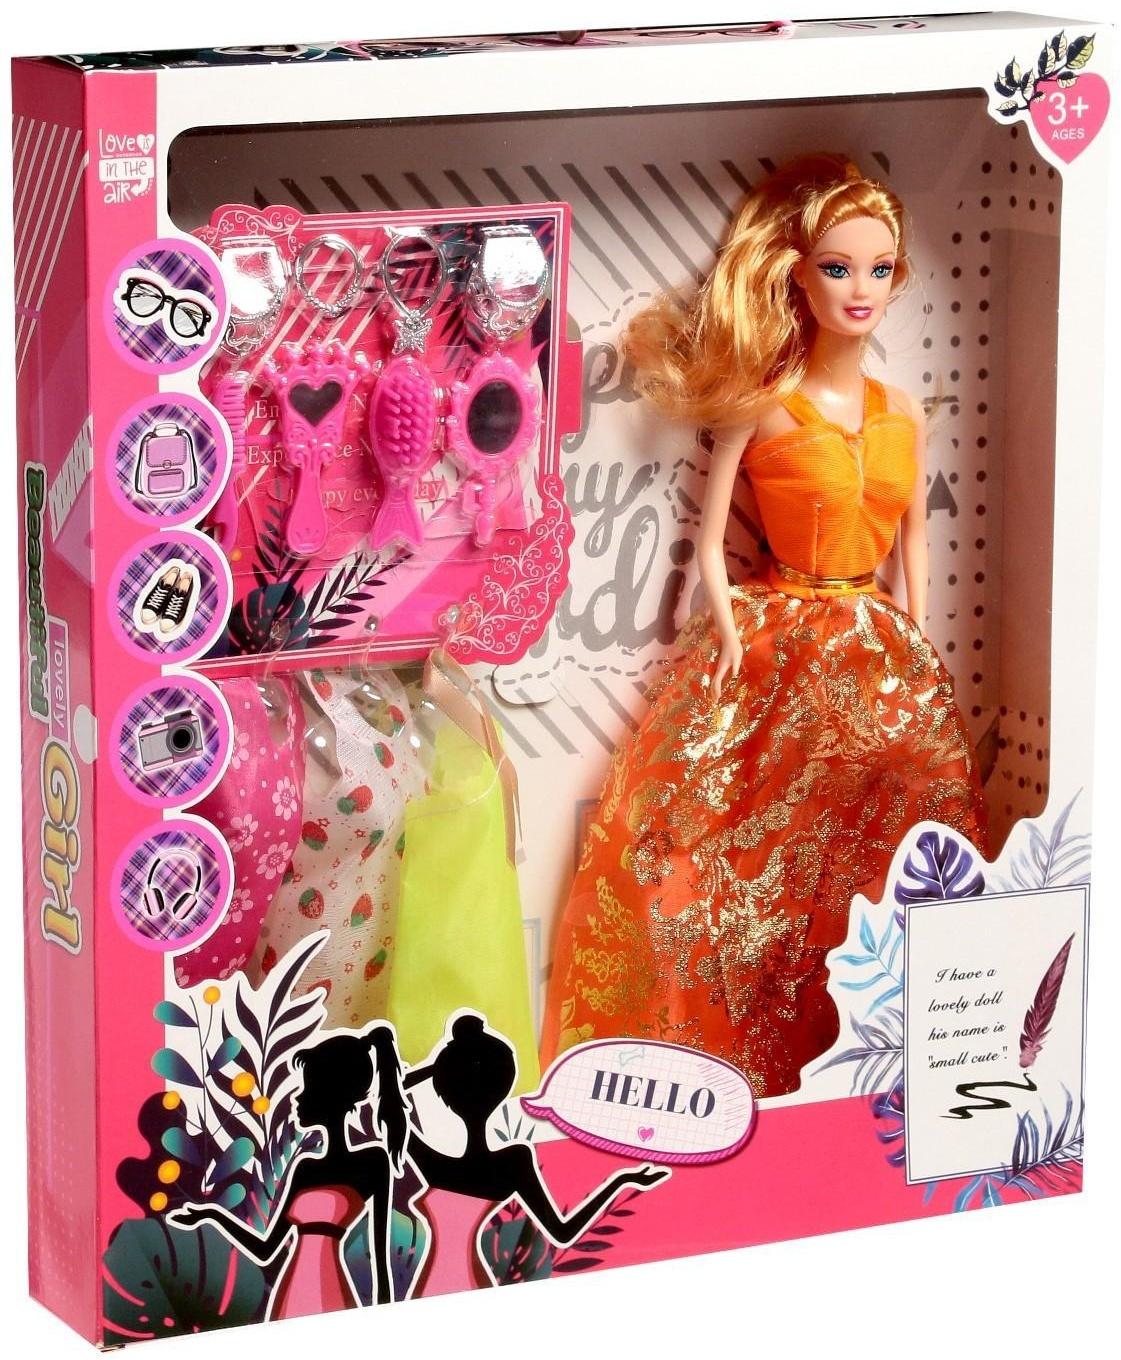 Кукла-модель «Марина» с набором платьев и аксессуарами, МИКС